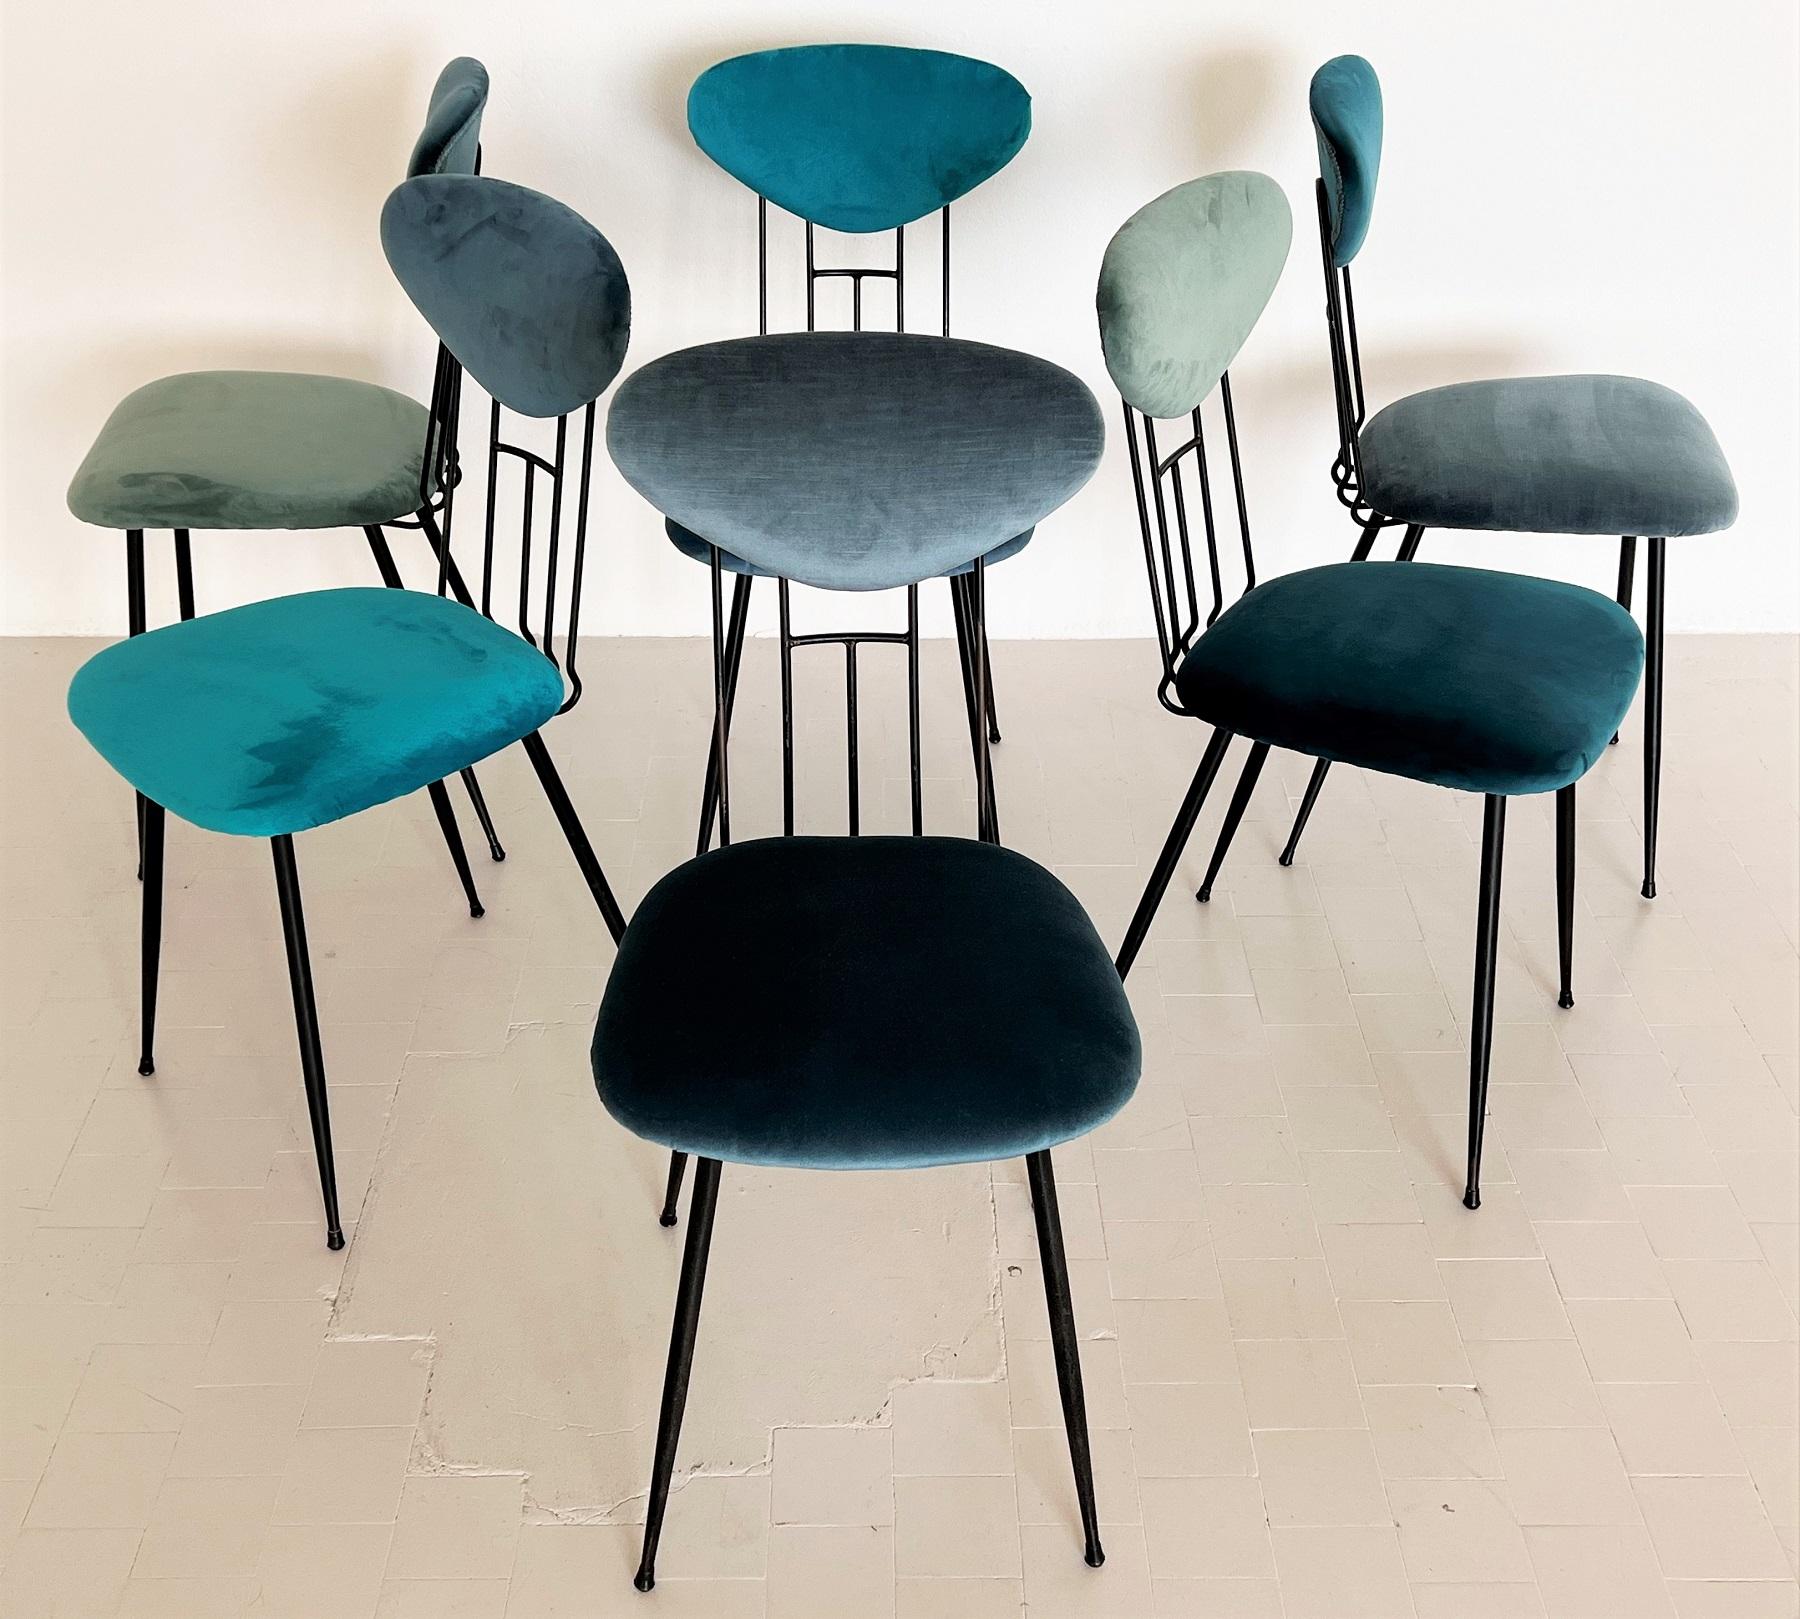 Italian Midcentury Dining Room Chairs Re-Upholstered in Velvet, 1960s For Sale 6